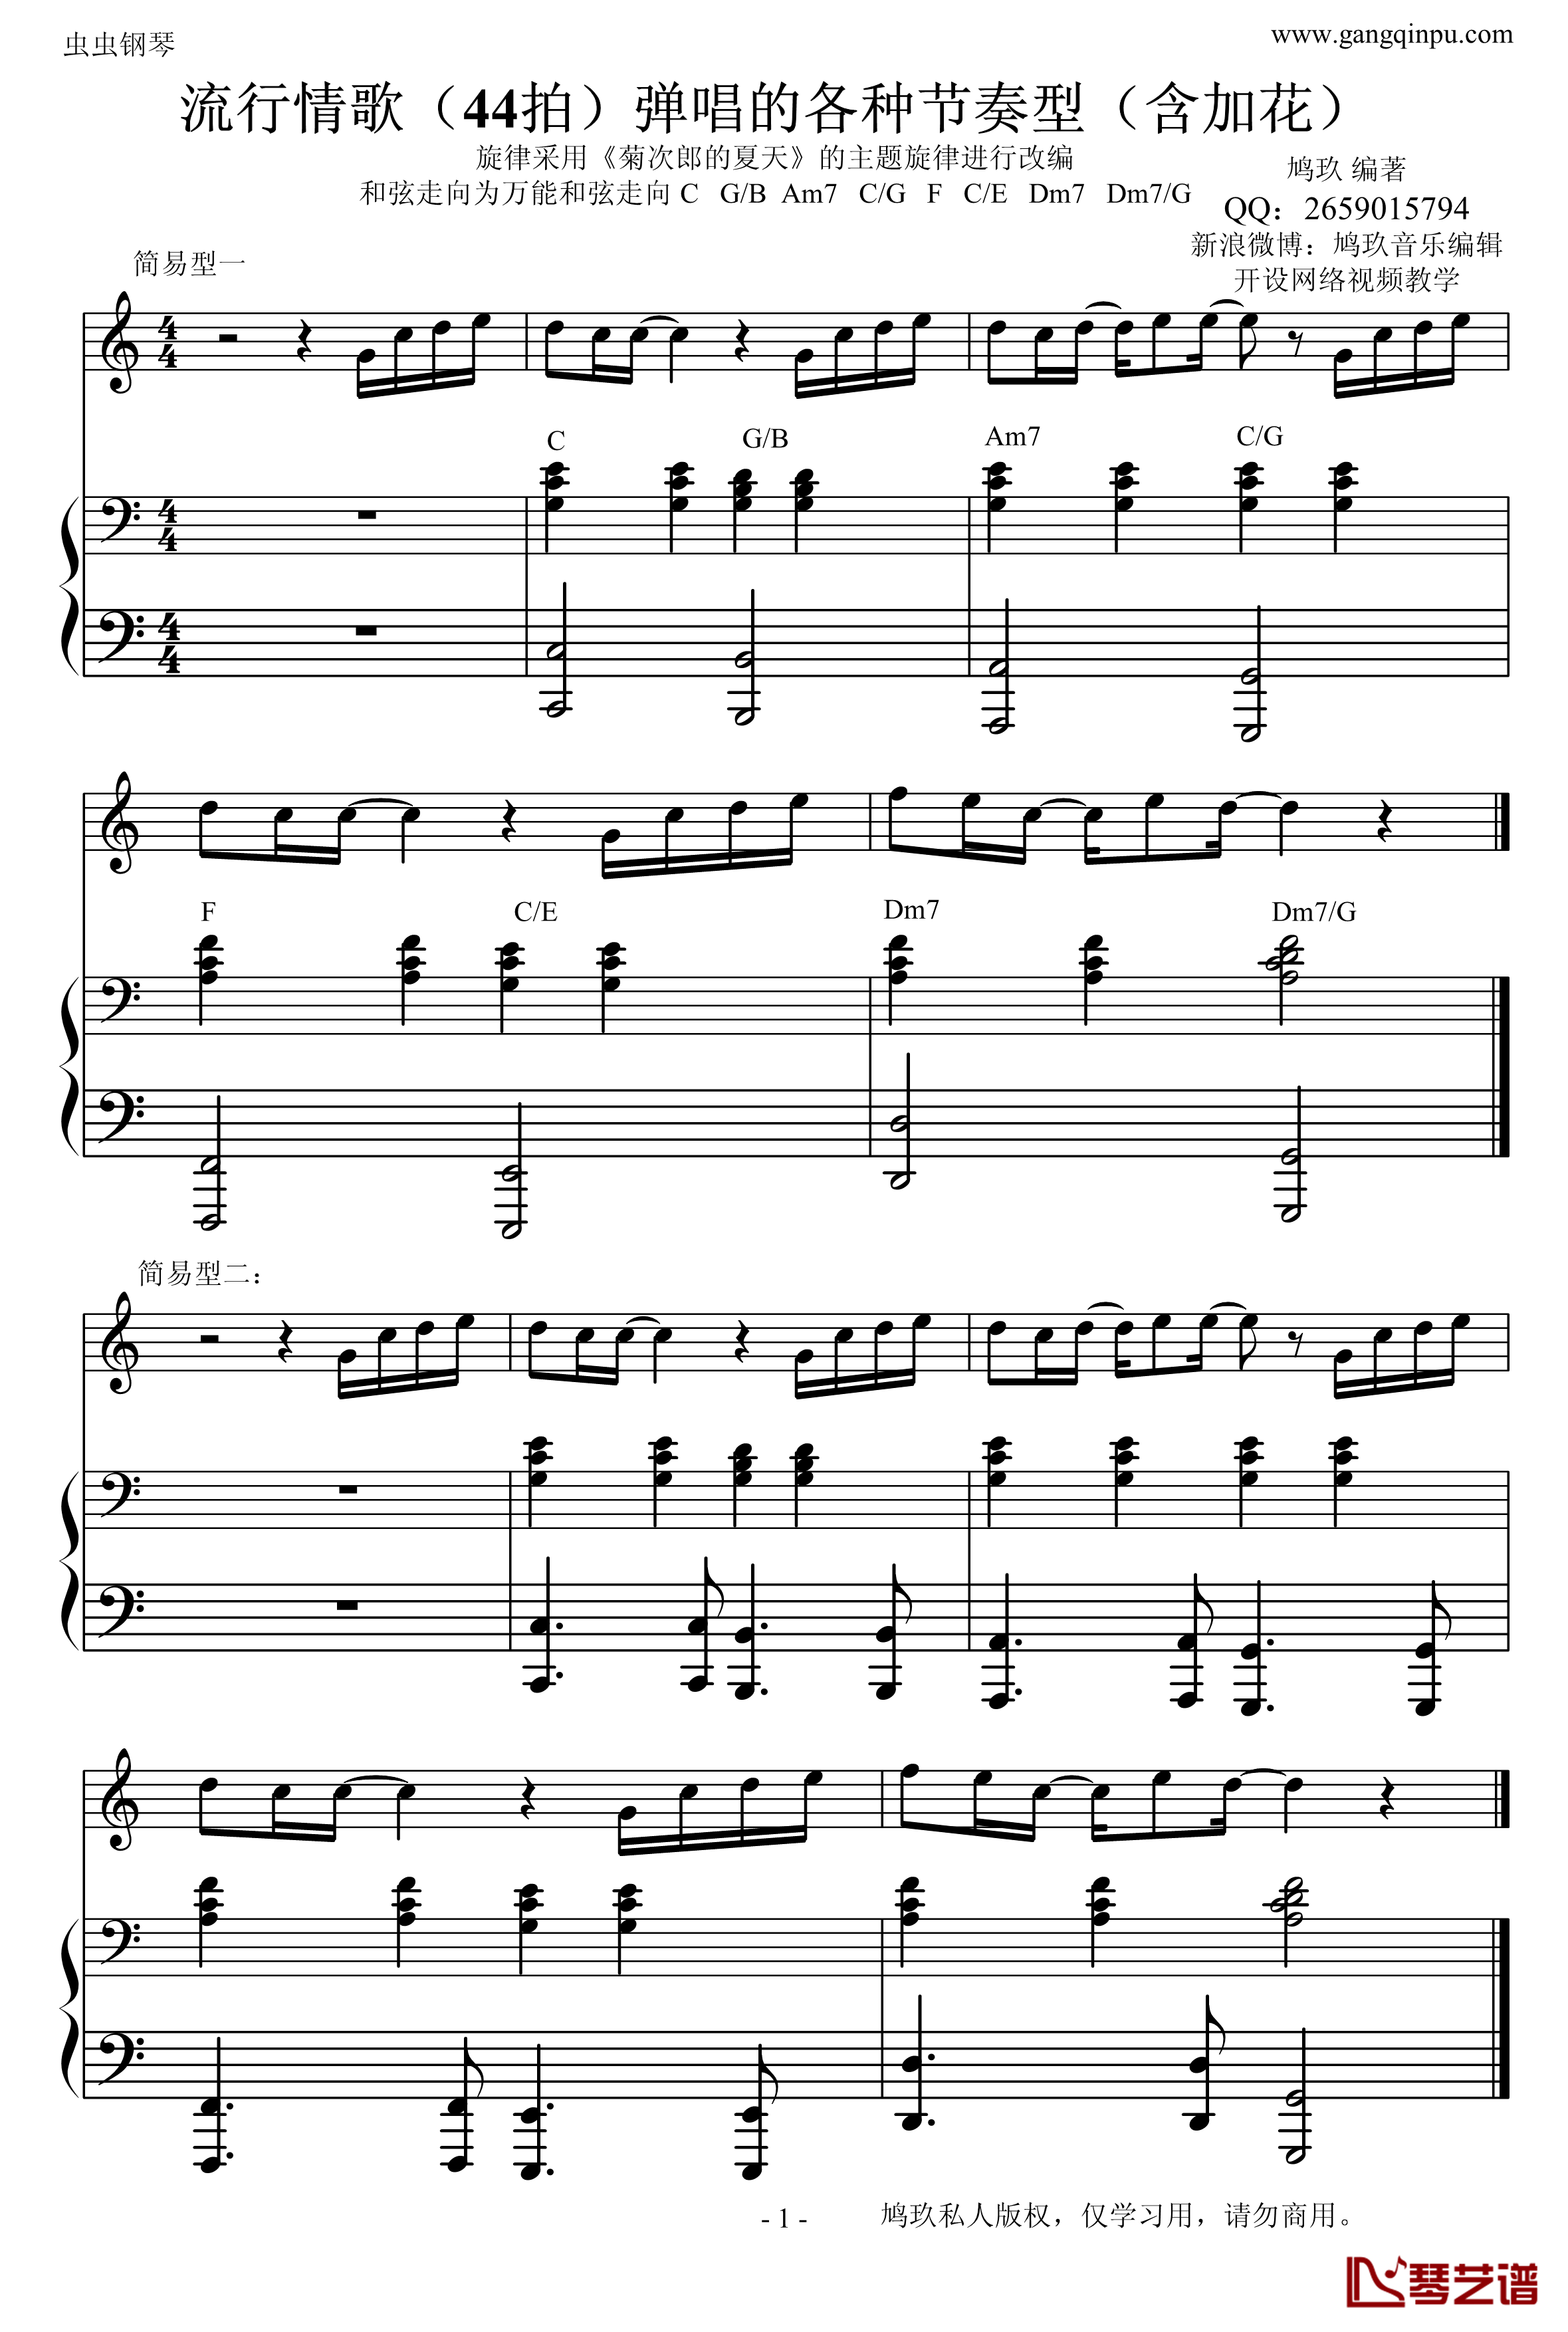 菊次郎的夏天钢琴谱-改编的-示范钢琴弹唱的常见伴奏型久石让1